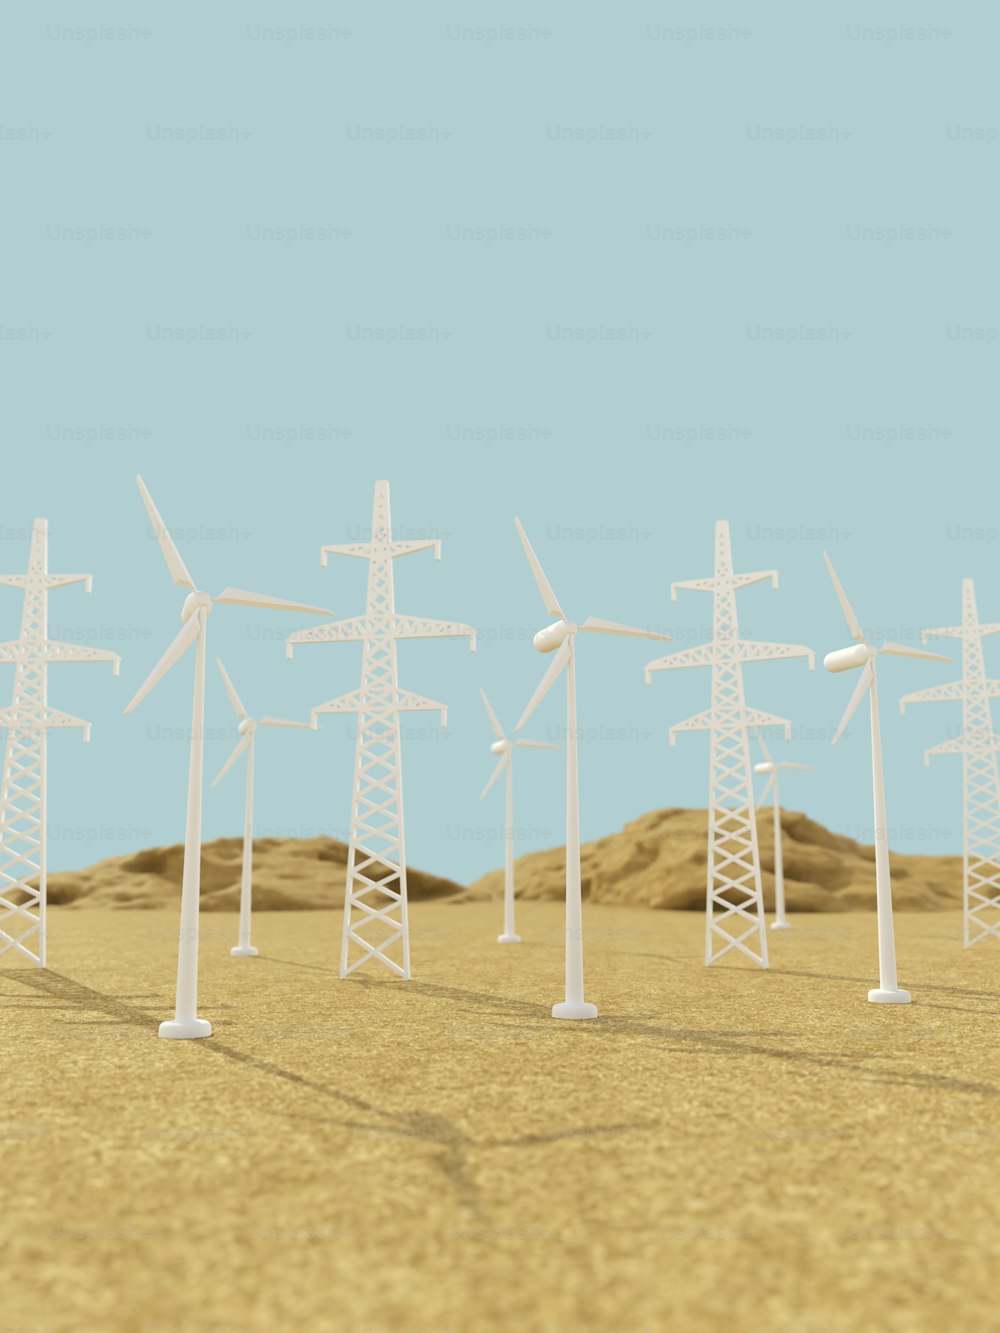 Eine Reihe von Windrädern in einer Wüste